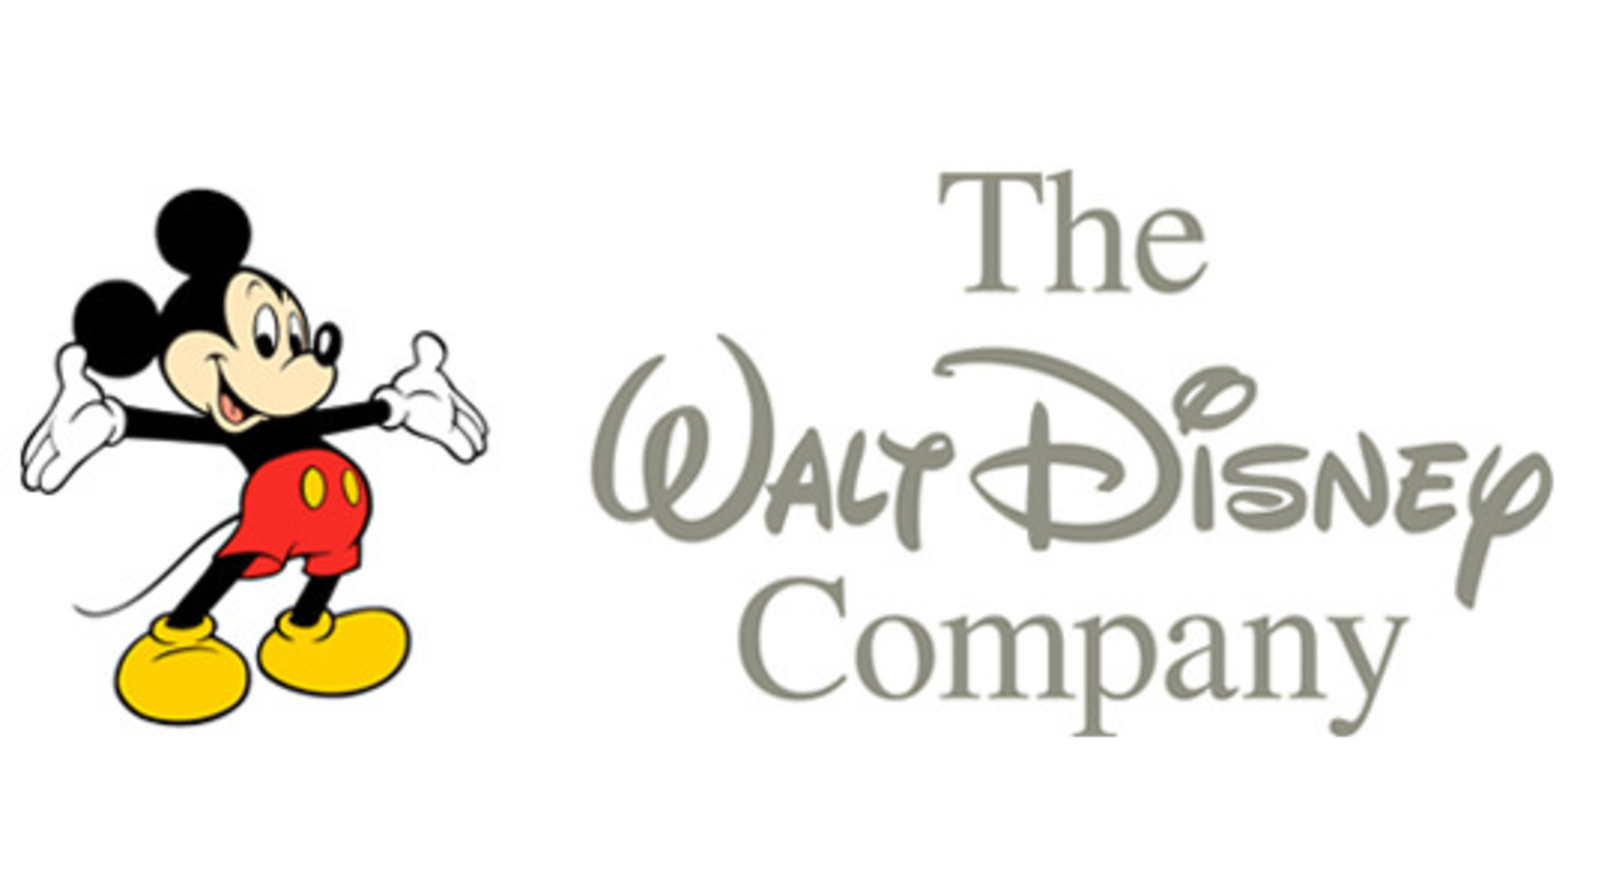 Студия уолта диснея. Walt Disney Company компания Уолта Диснея. Уолт Дисней Компани логотип. Логотип студии Уолта Диснея. Символ студии Уолта Диснея.